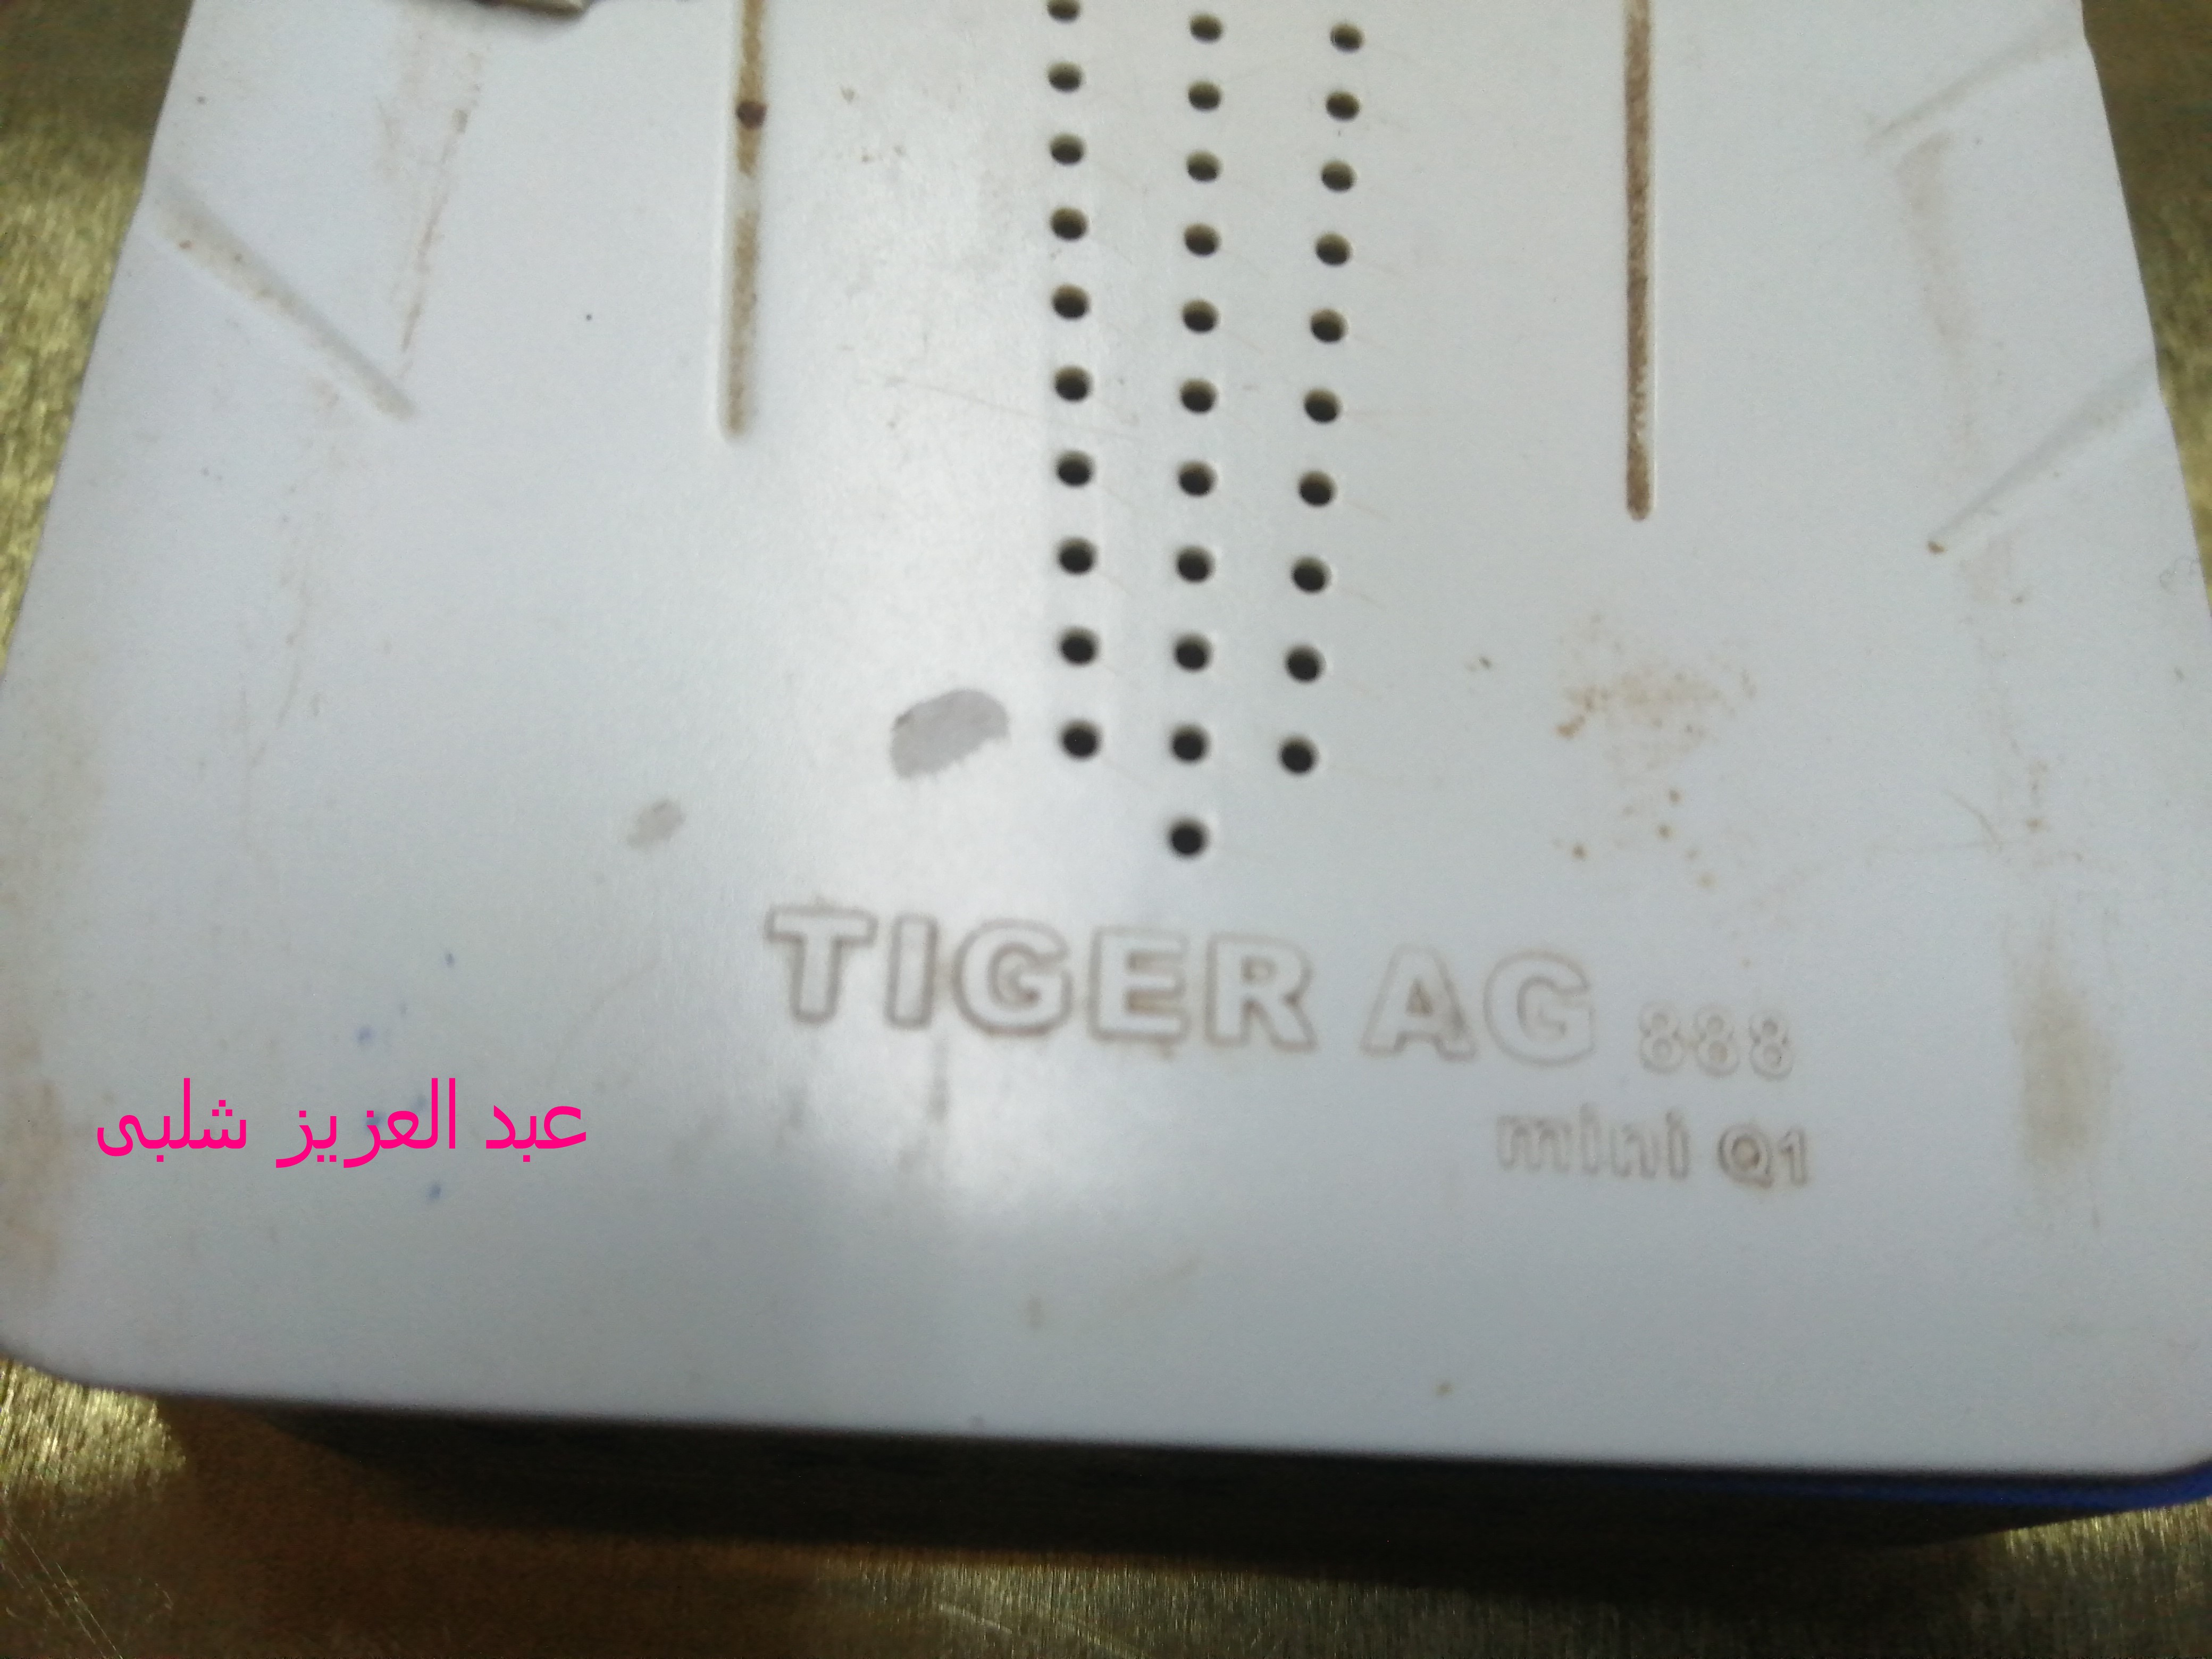  TIGER AG 888 mini Q1 3.jpg